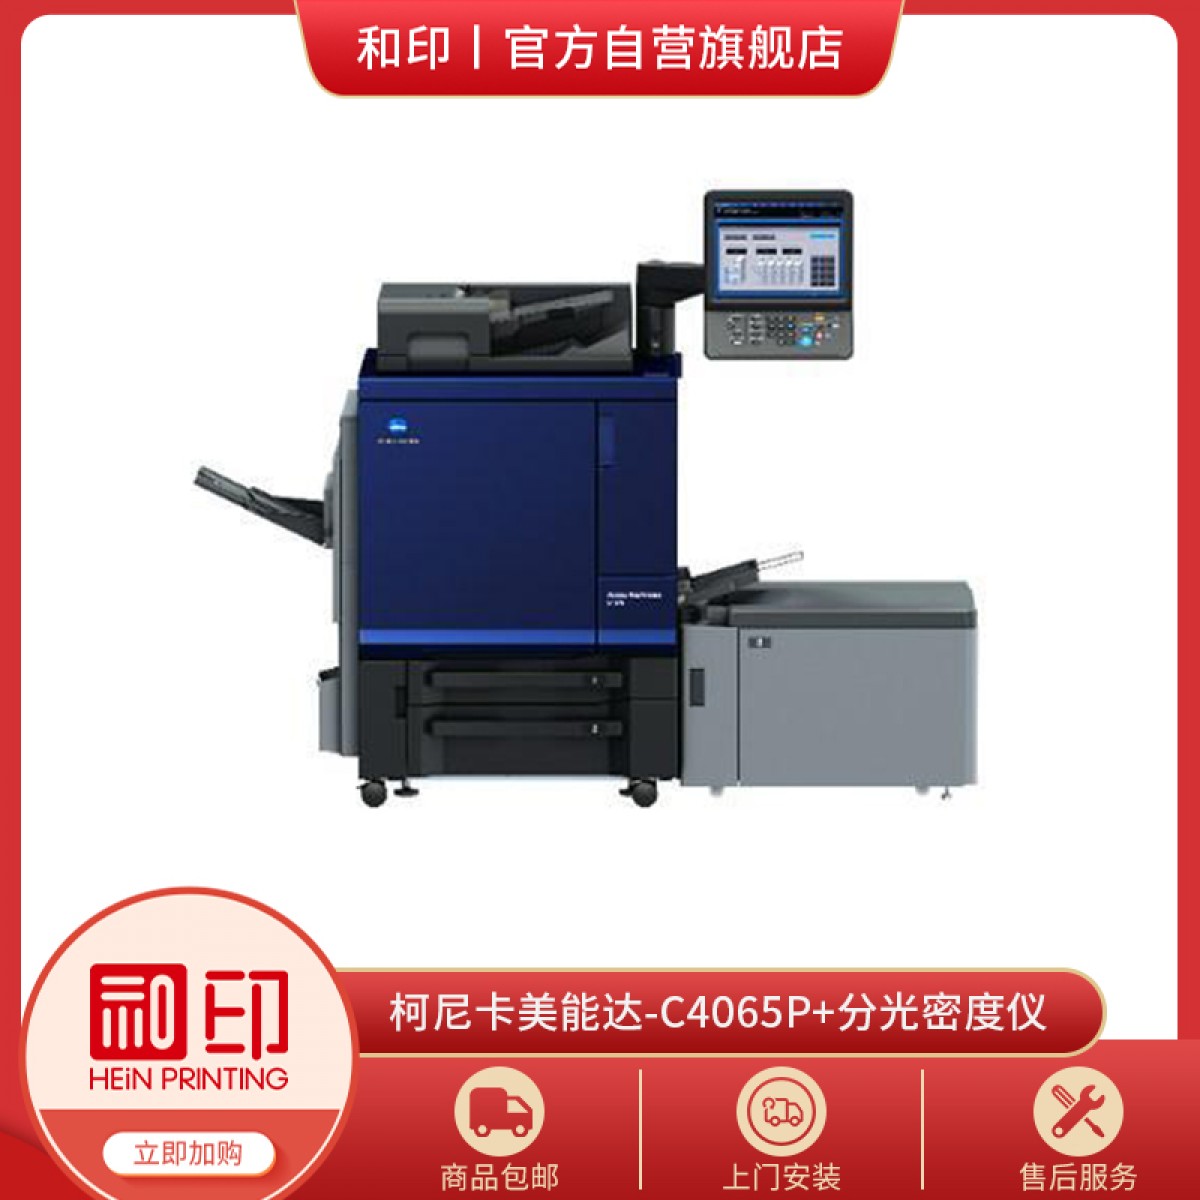 彩色打印机-柯尼卡美能达-C4065P-标配版+分光密度仪